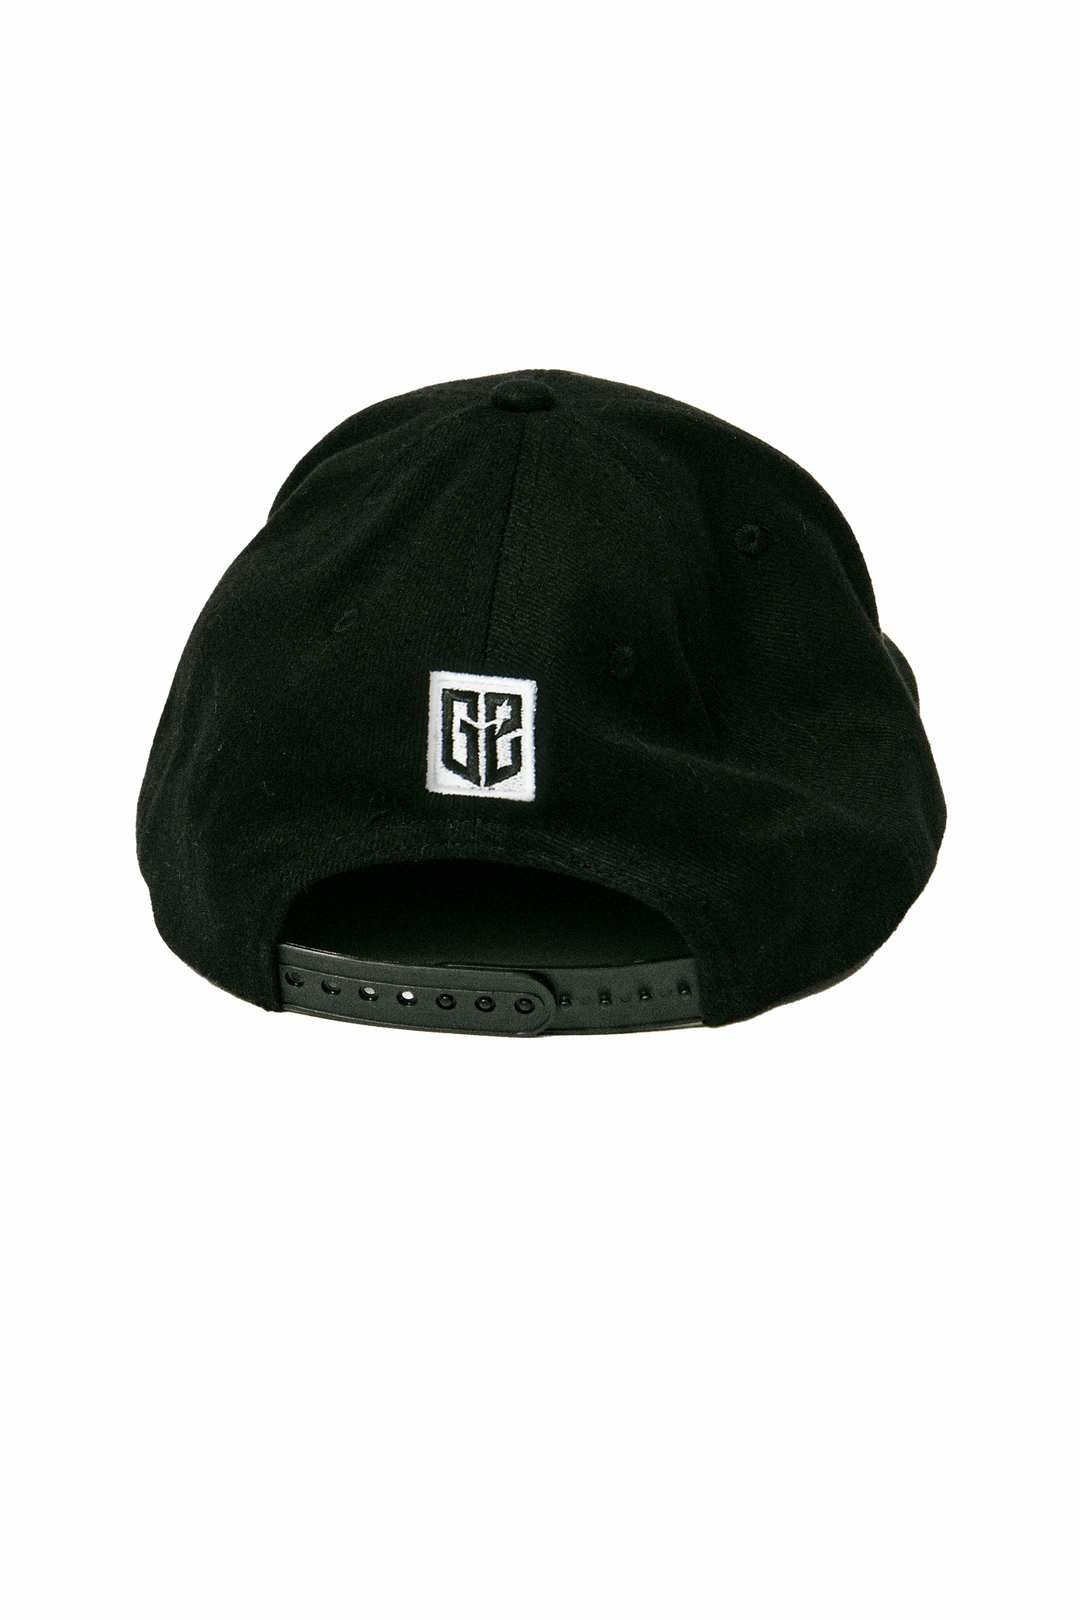 G2 ESSENTIALS - Snapback cap (flat brim) - Black